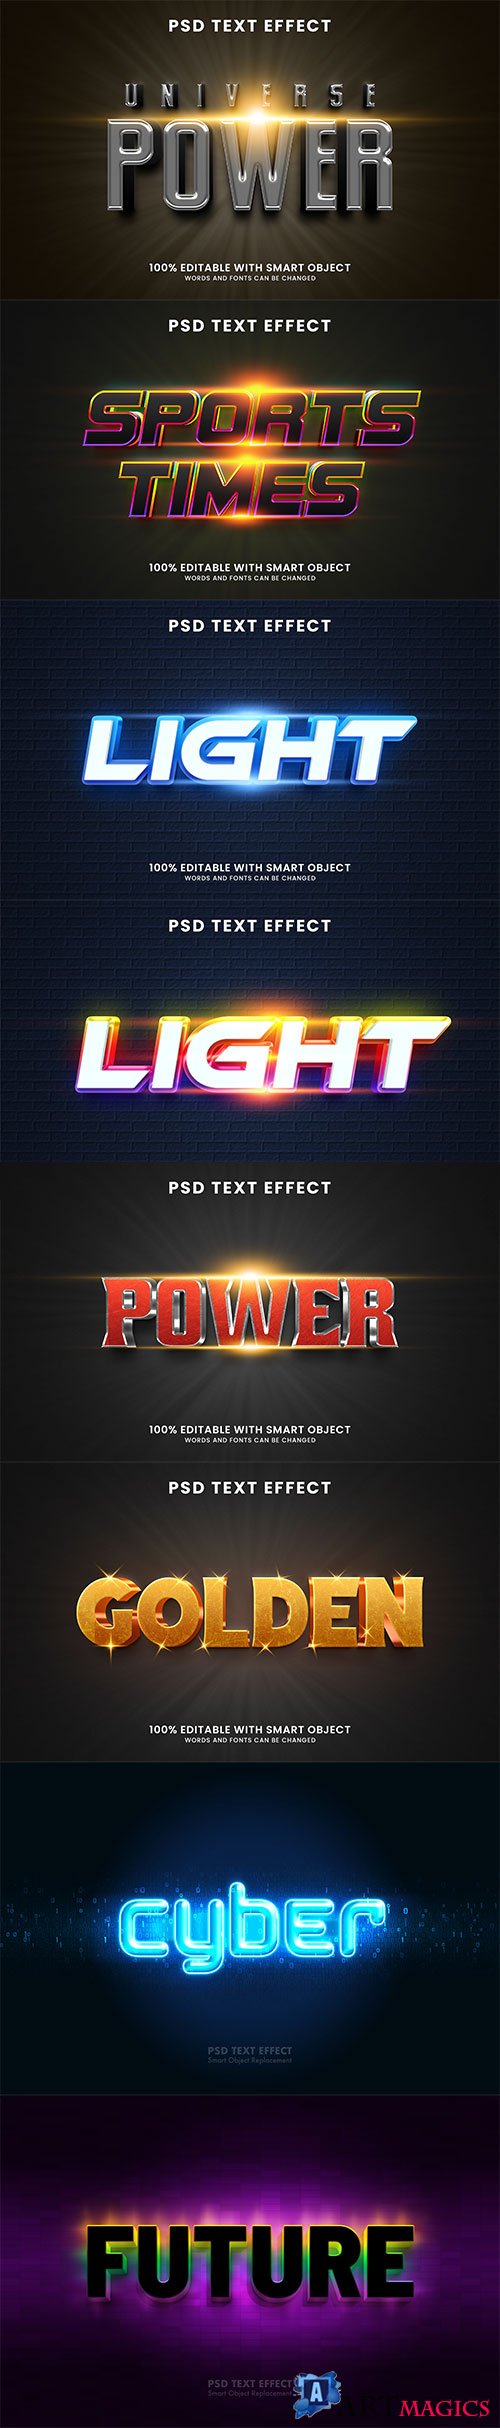 Psd text effect set vol 74